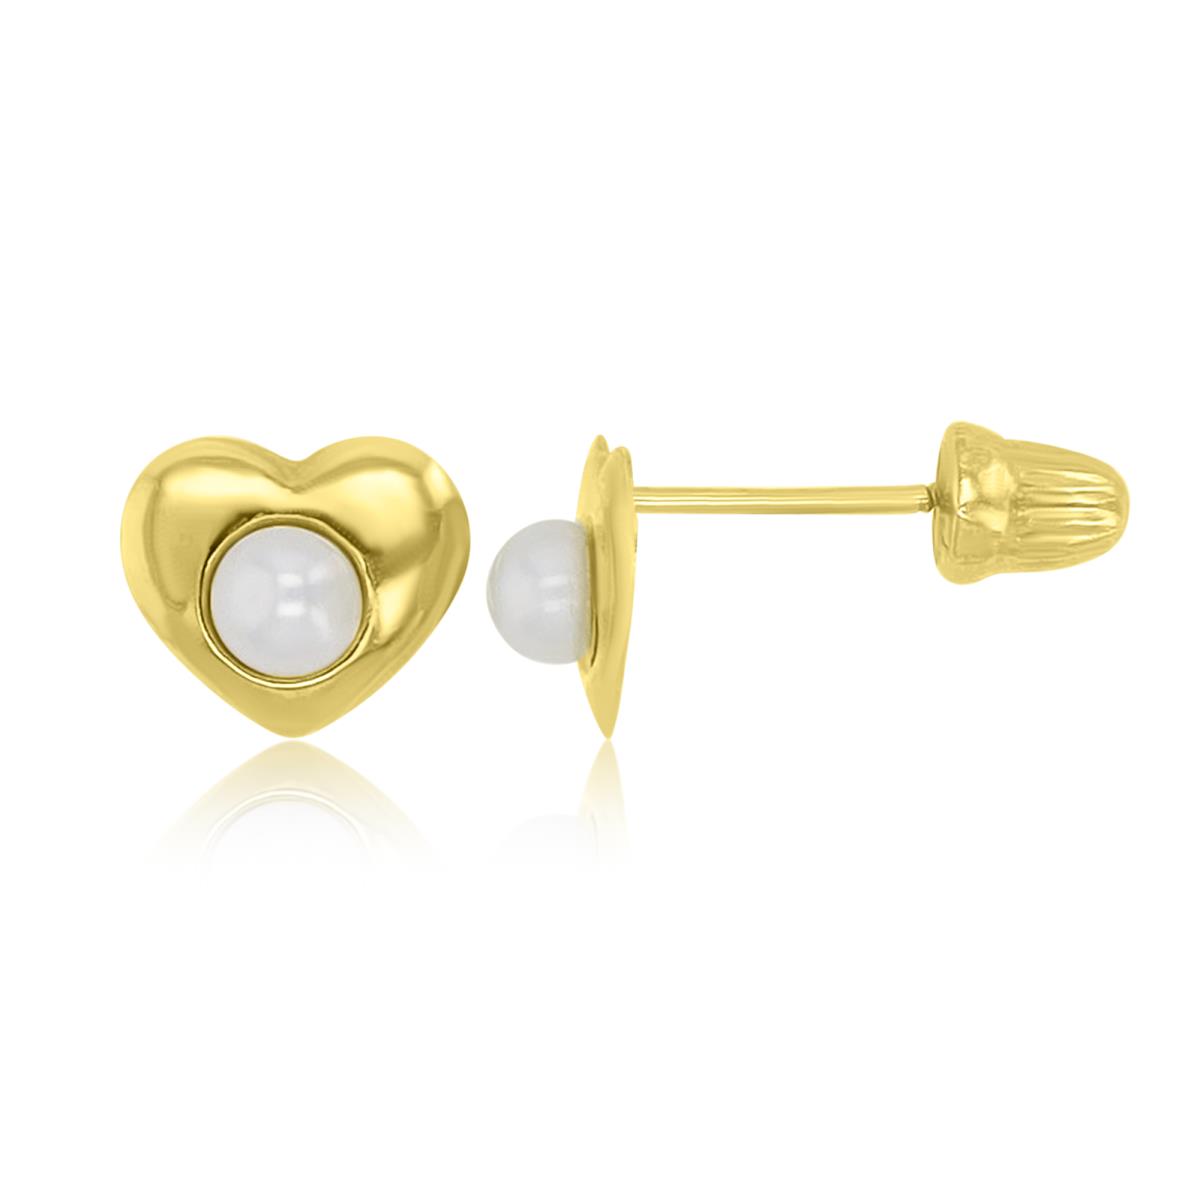 14K Yellow Gold 5.5x6.5mm Heart Screw Back Stud Earrings